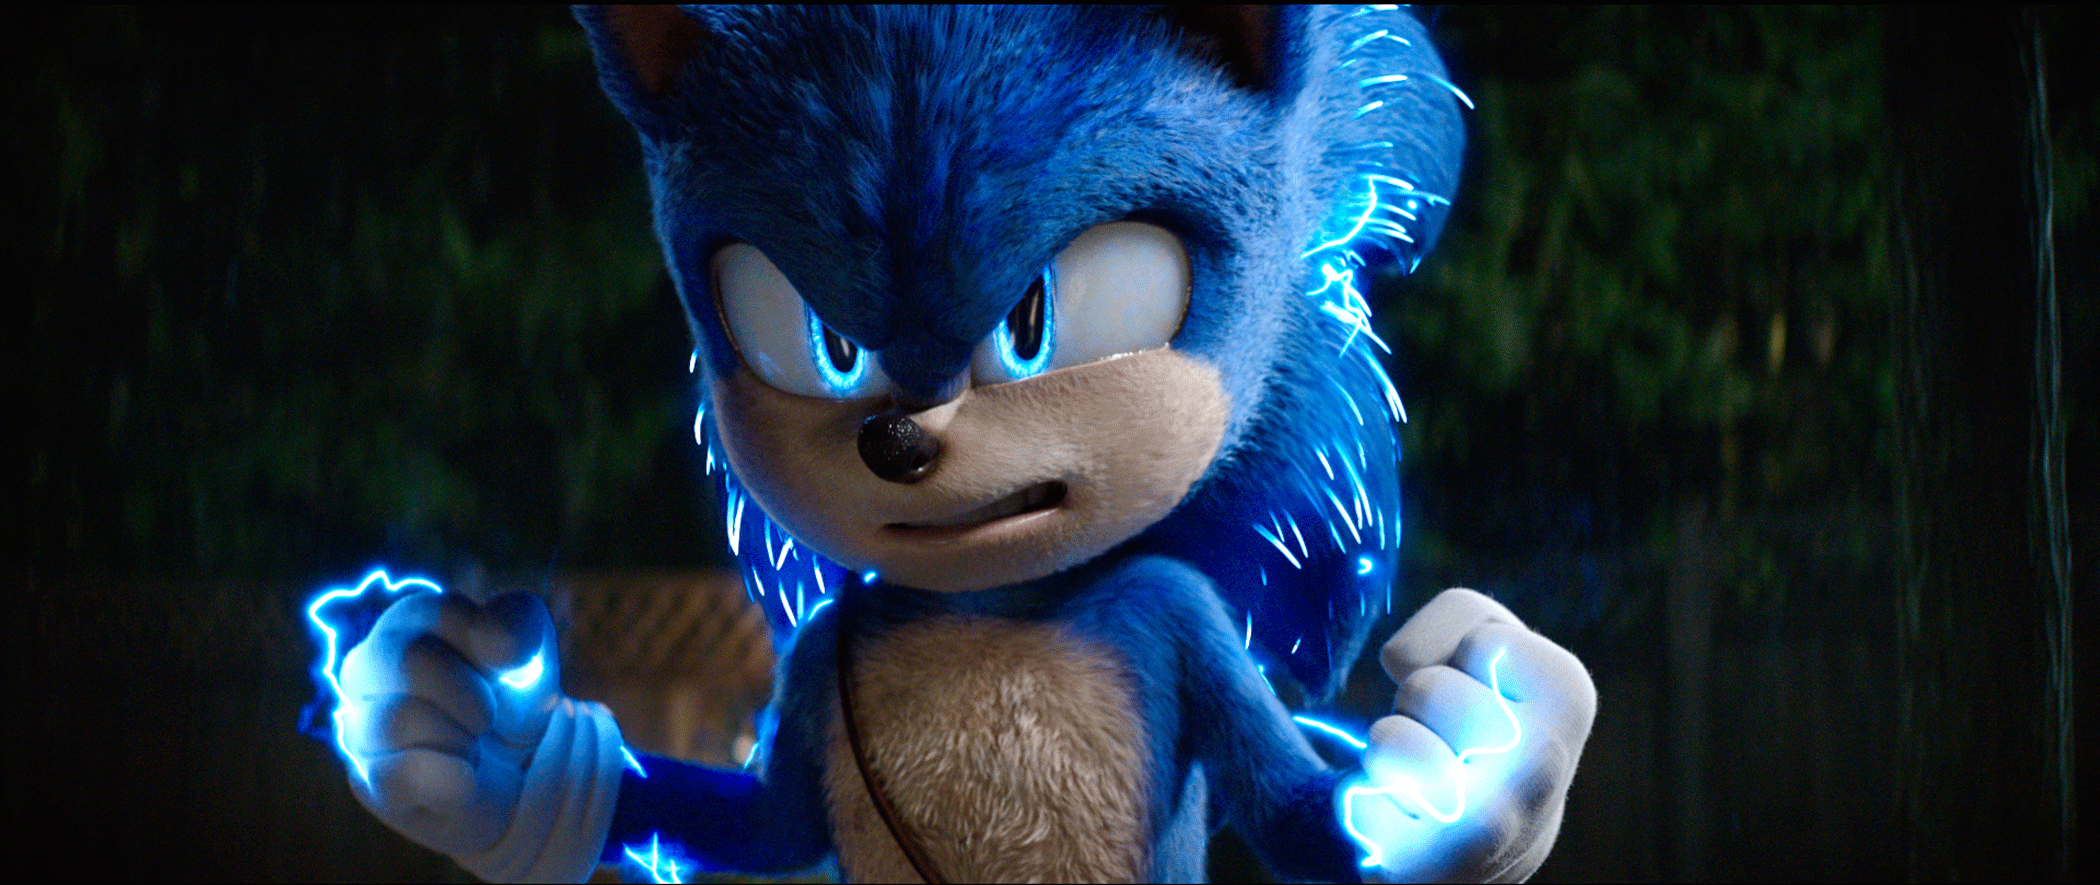  Sonic The Hedgehog 2 [Blu-ray] : James Marsden, Ben Schwartz,  Tika Sumpter: Movies & TV